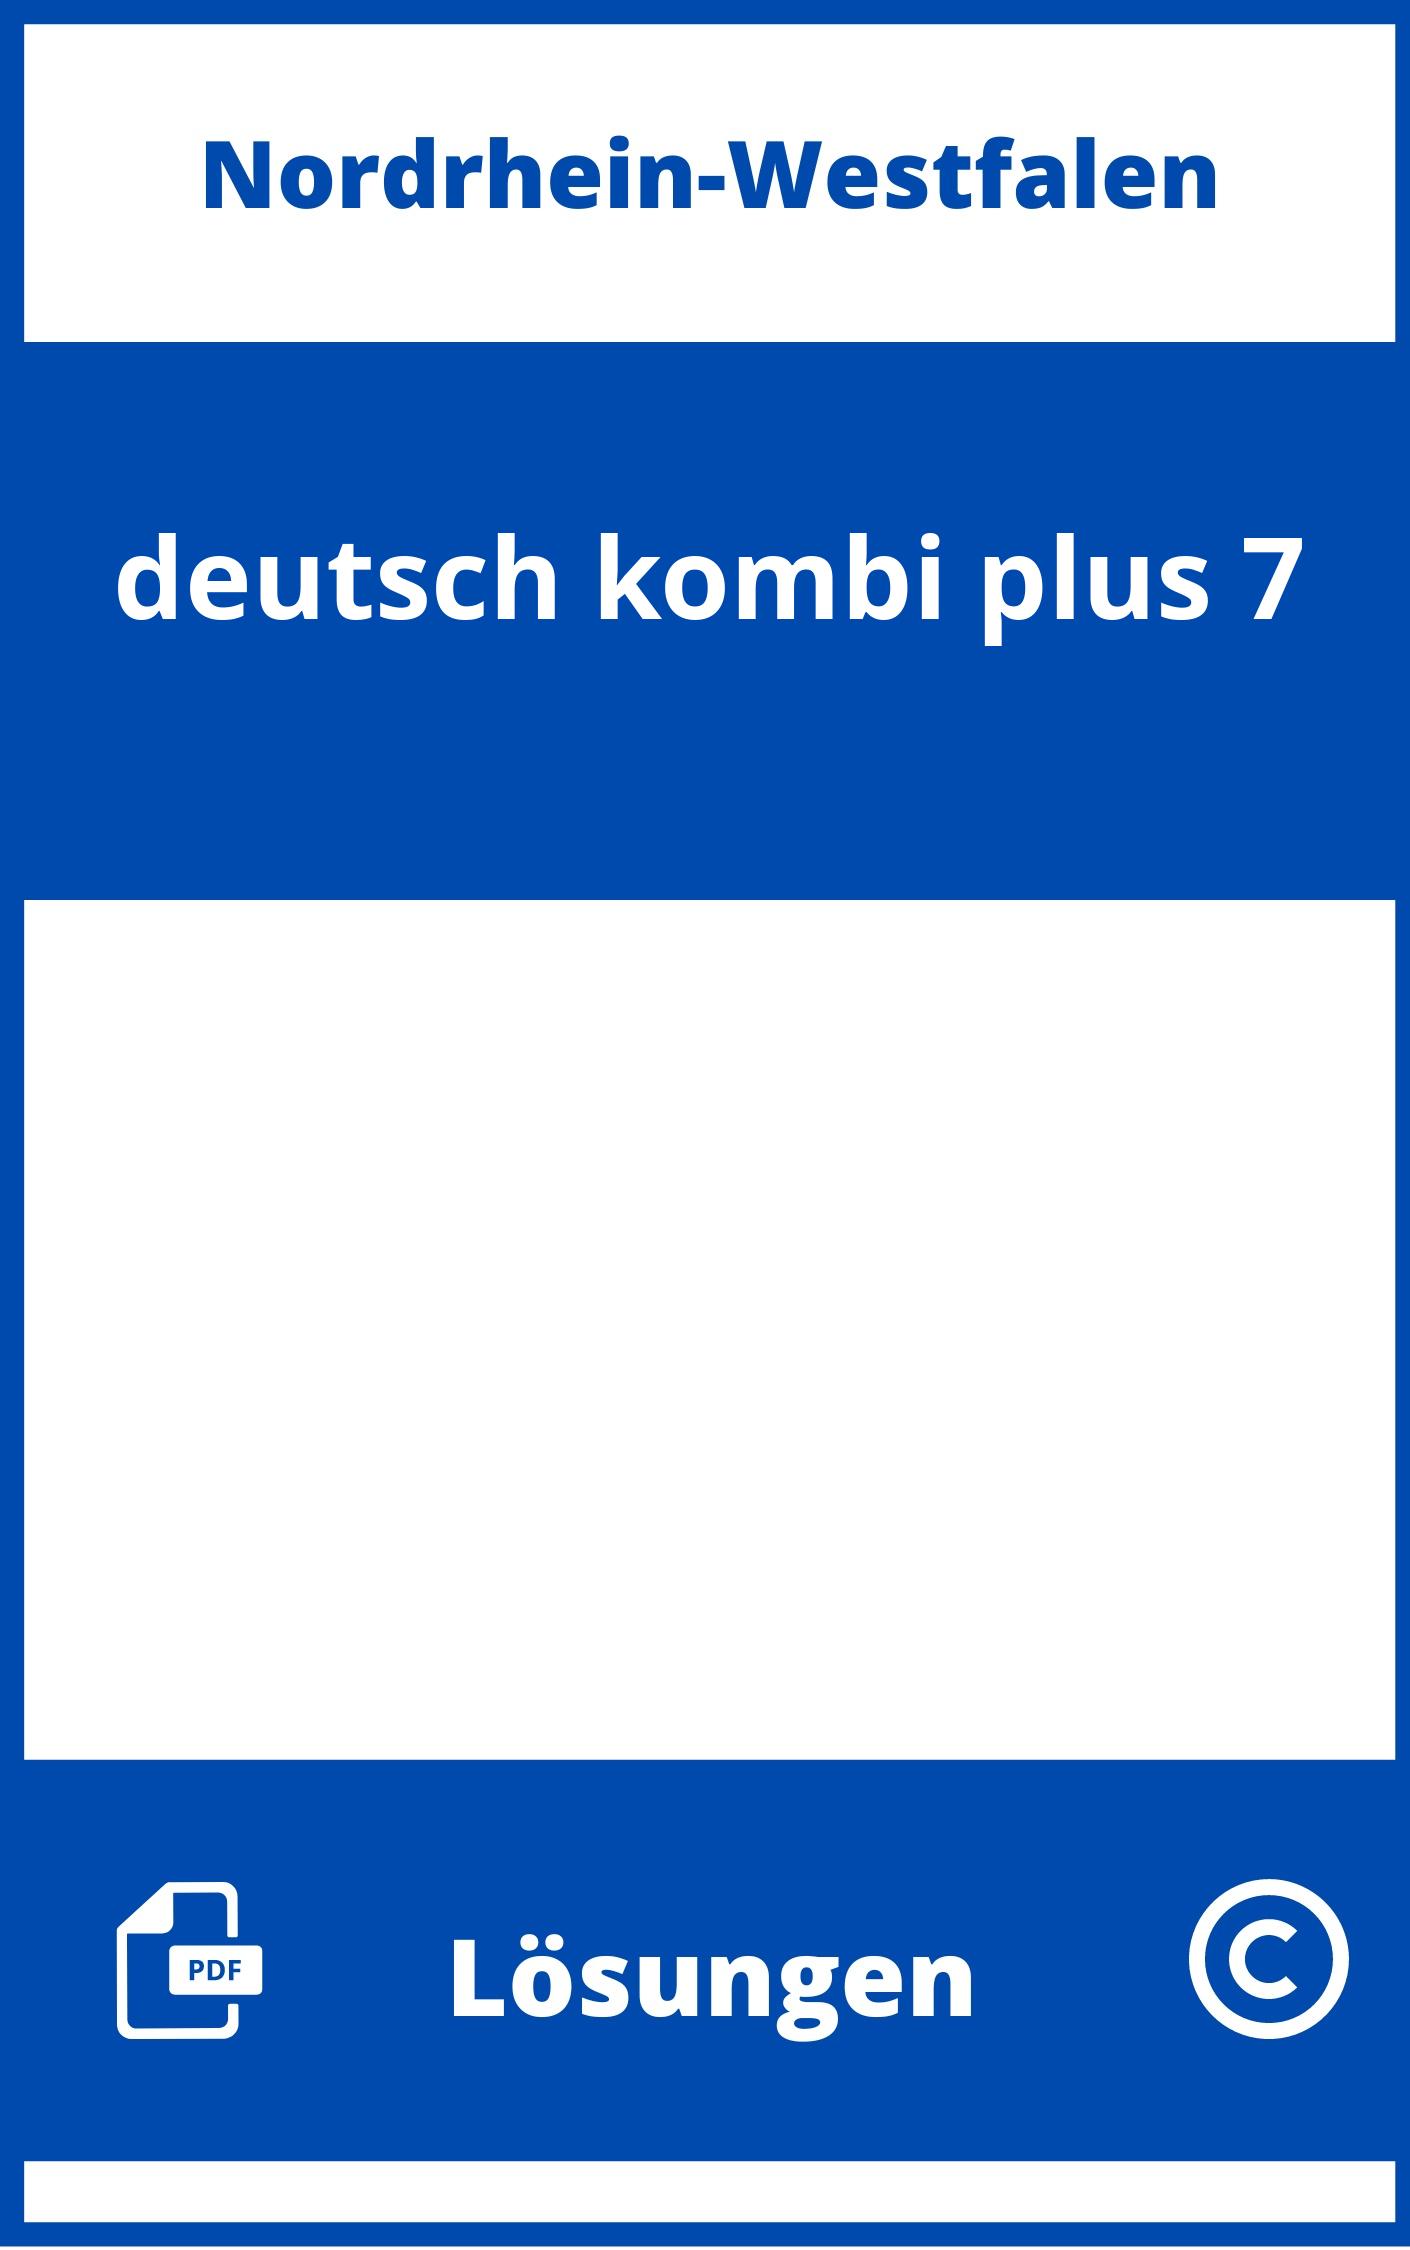 deutsch.kombi plus 7 Lösungen NRW PDF